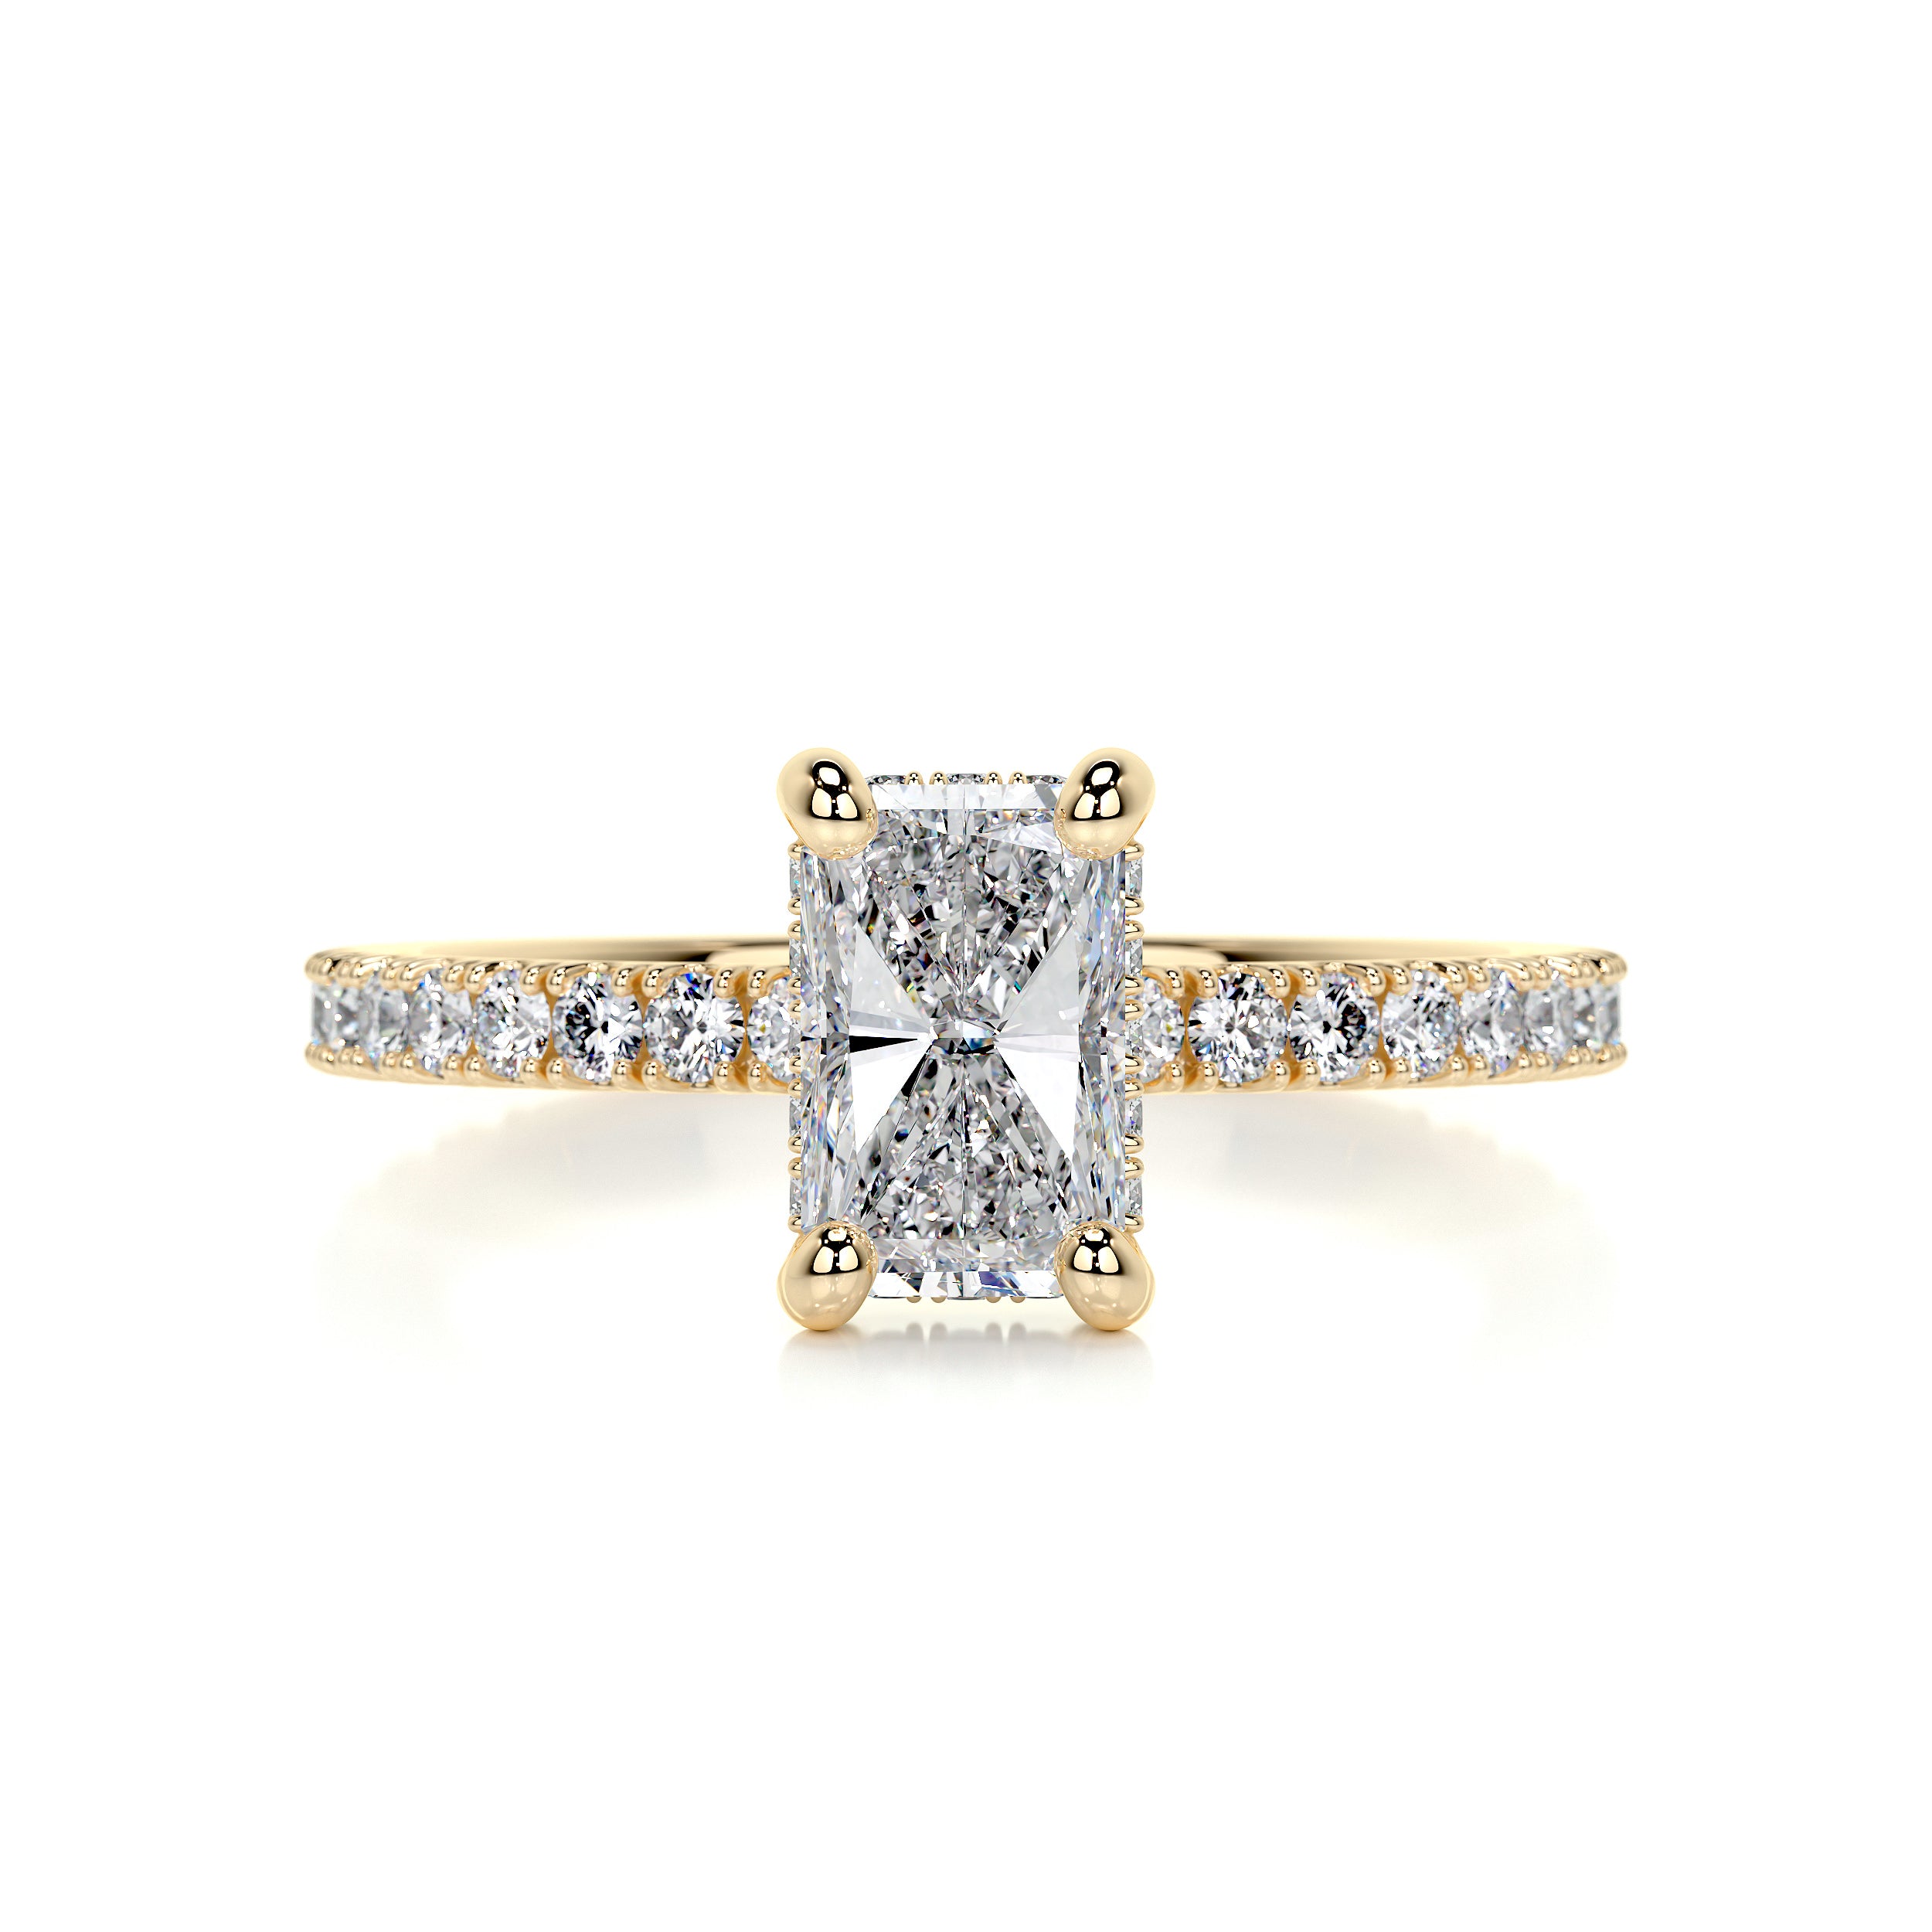 Deborah Diamond Engagement Ring   (1.5 Carat) -18K Yellow Gold